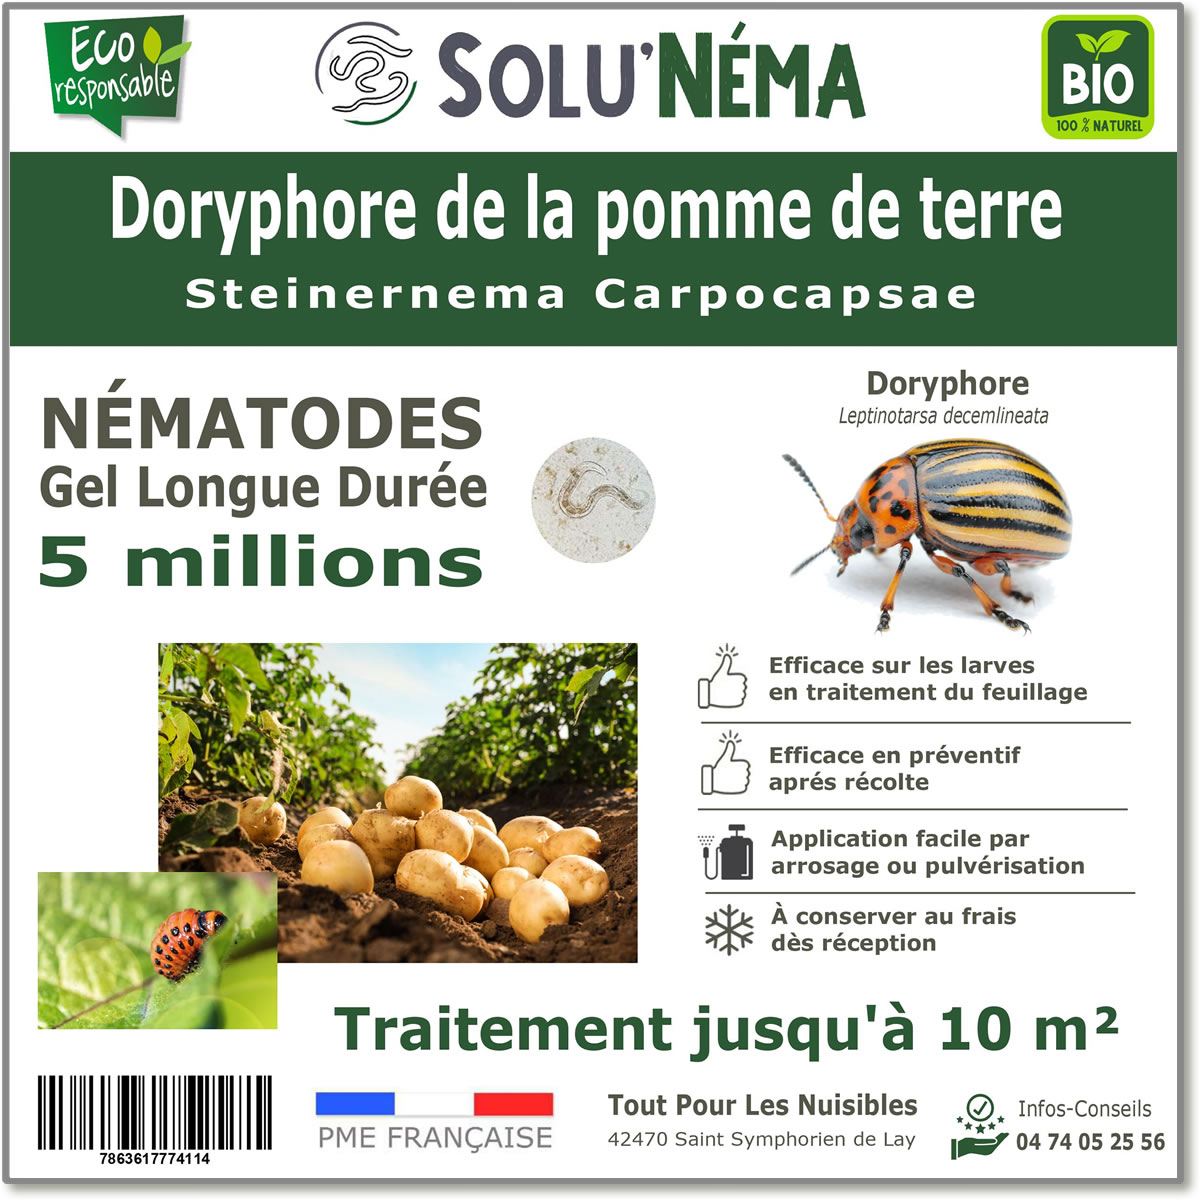 5 million nematodes to treat Colorado potato beetle larvae